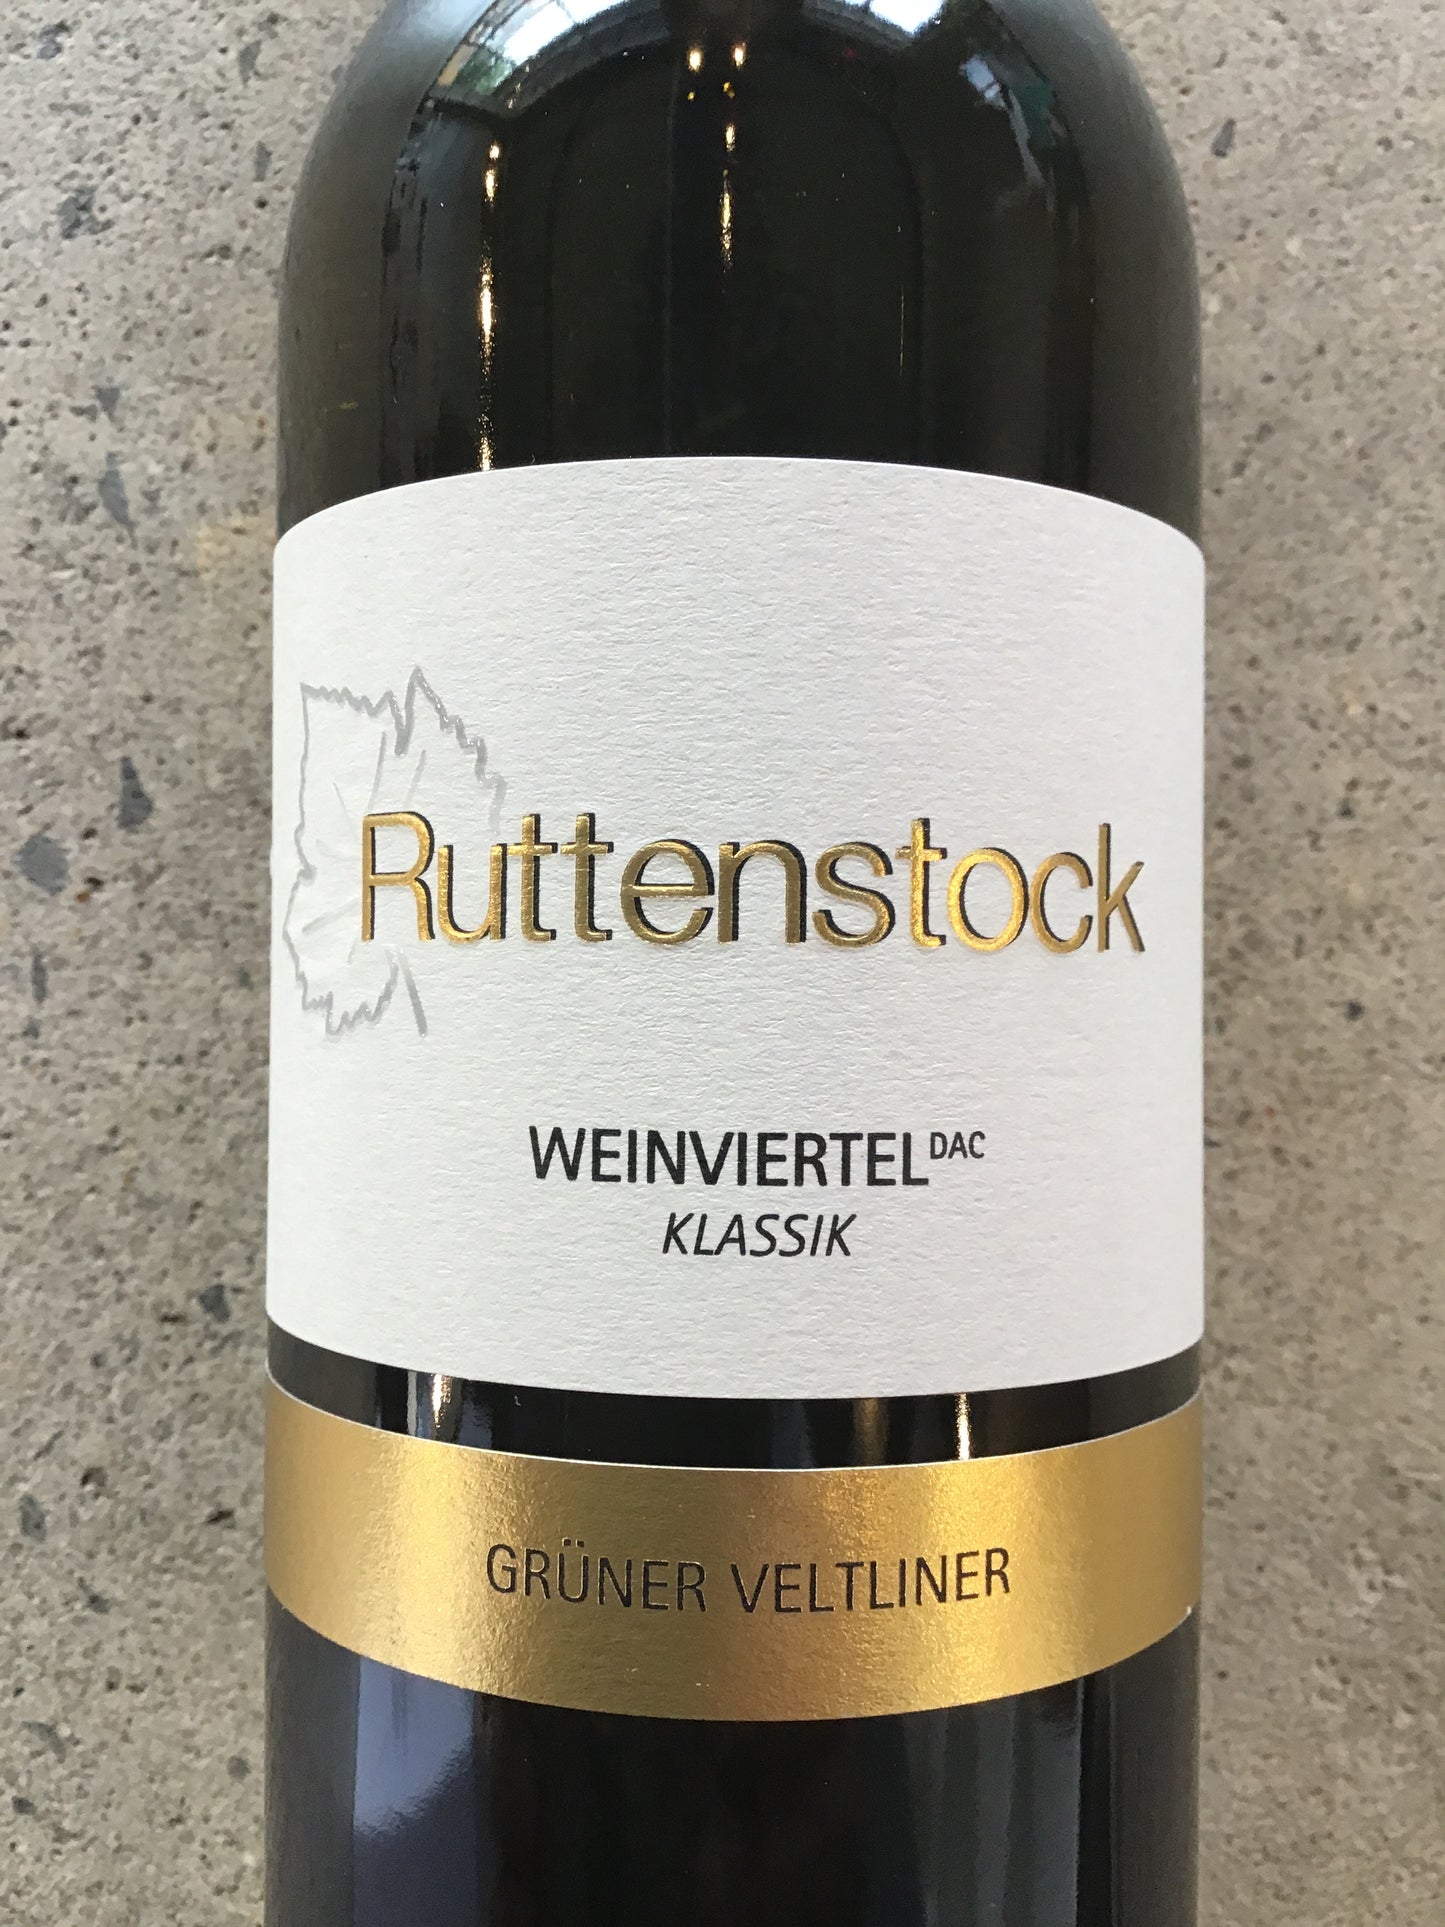 Ruttenstock - Gruner Veltliner - Weinviertel